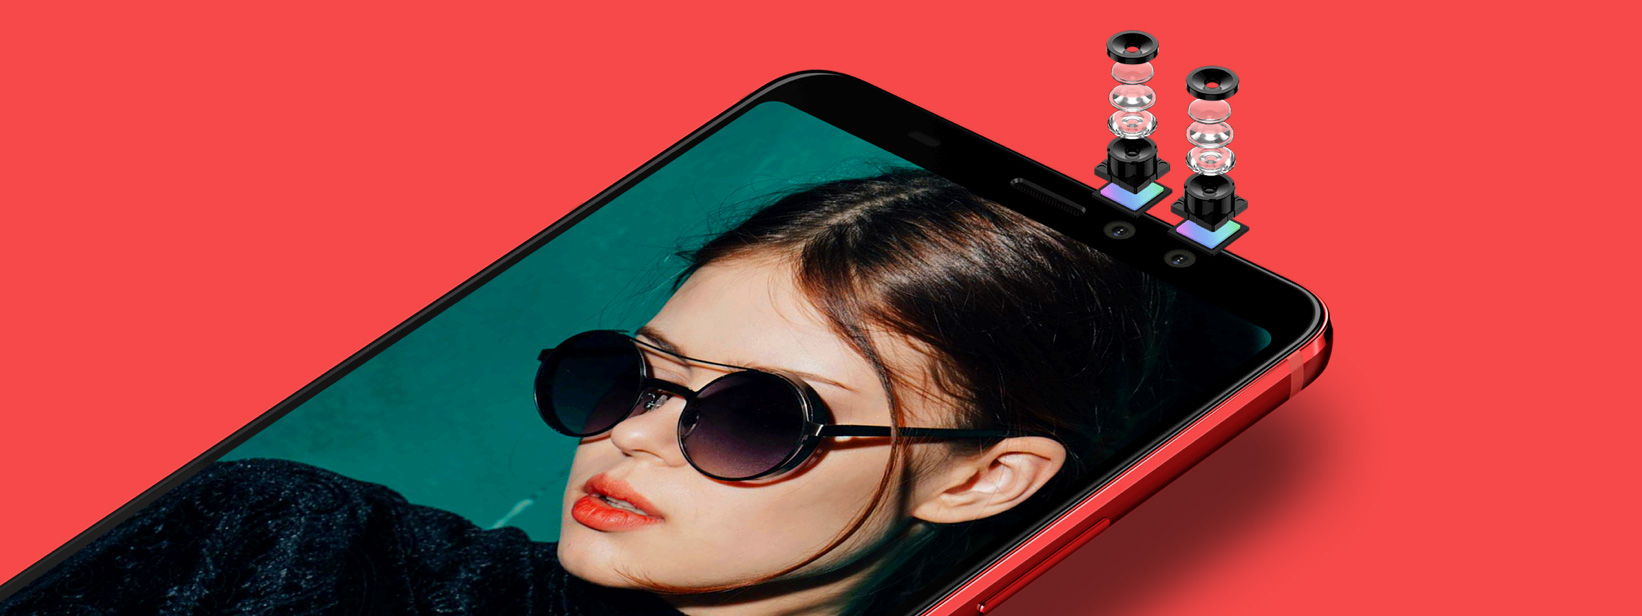 HTC U11 EYEs ra mắt: 6" viền mỏng, camera selfie kép, pin 3930mAh, Snapdragon 652